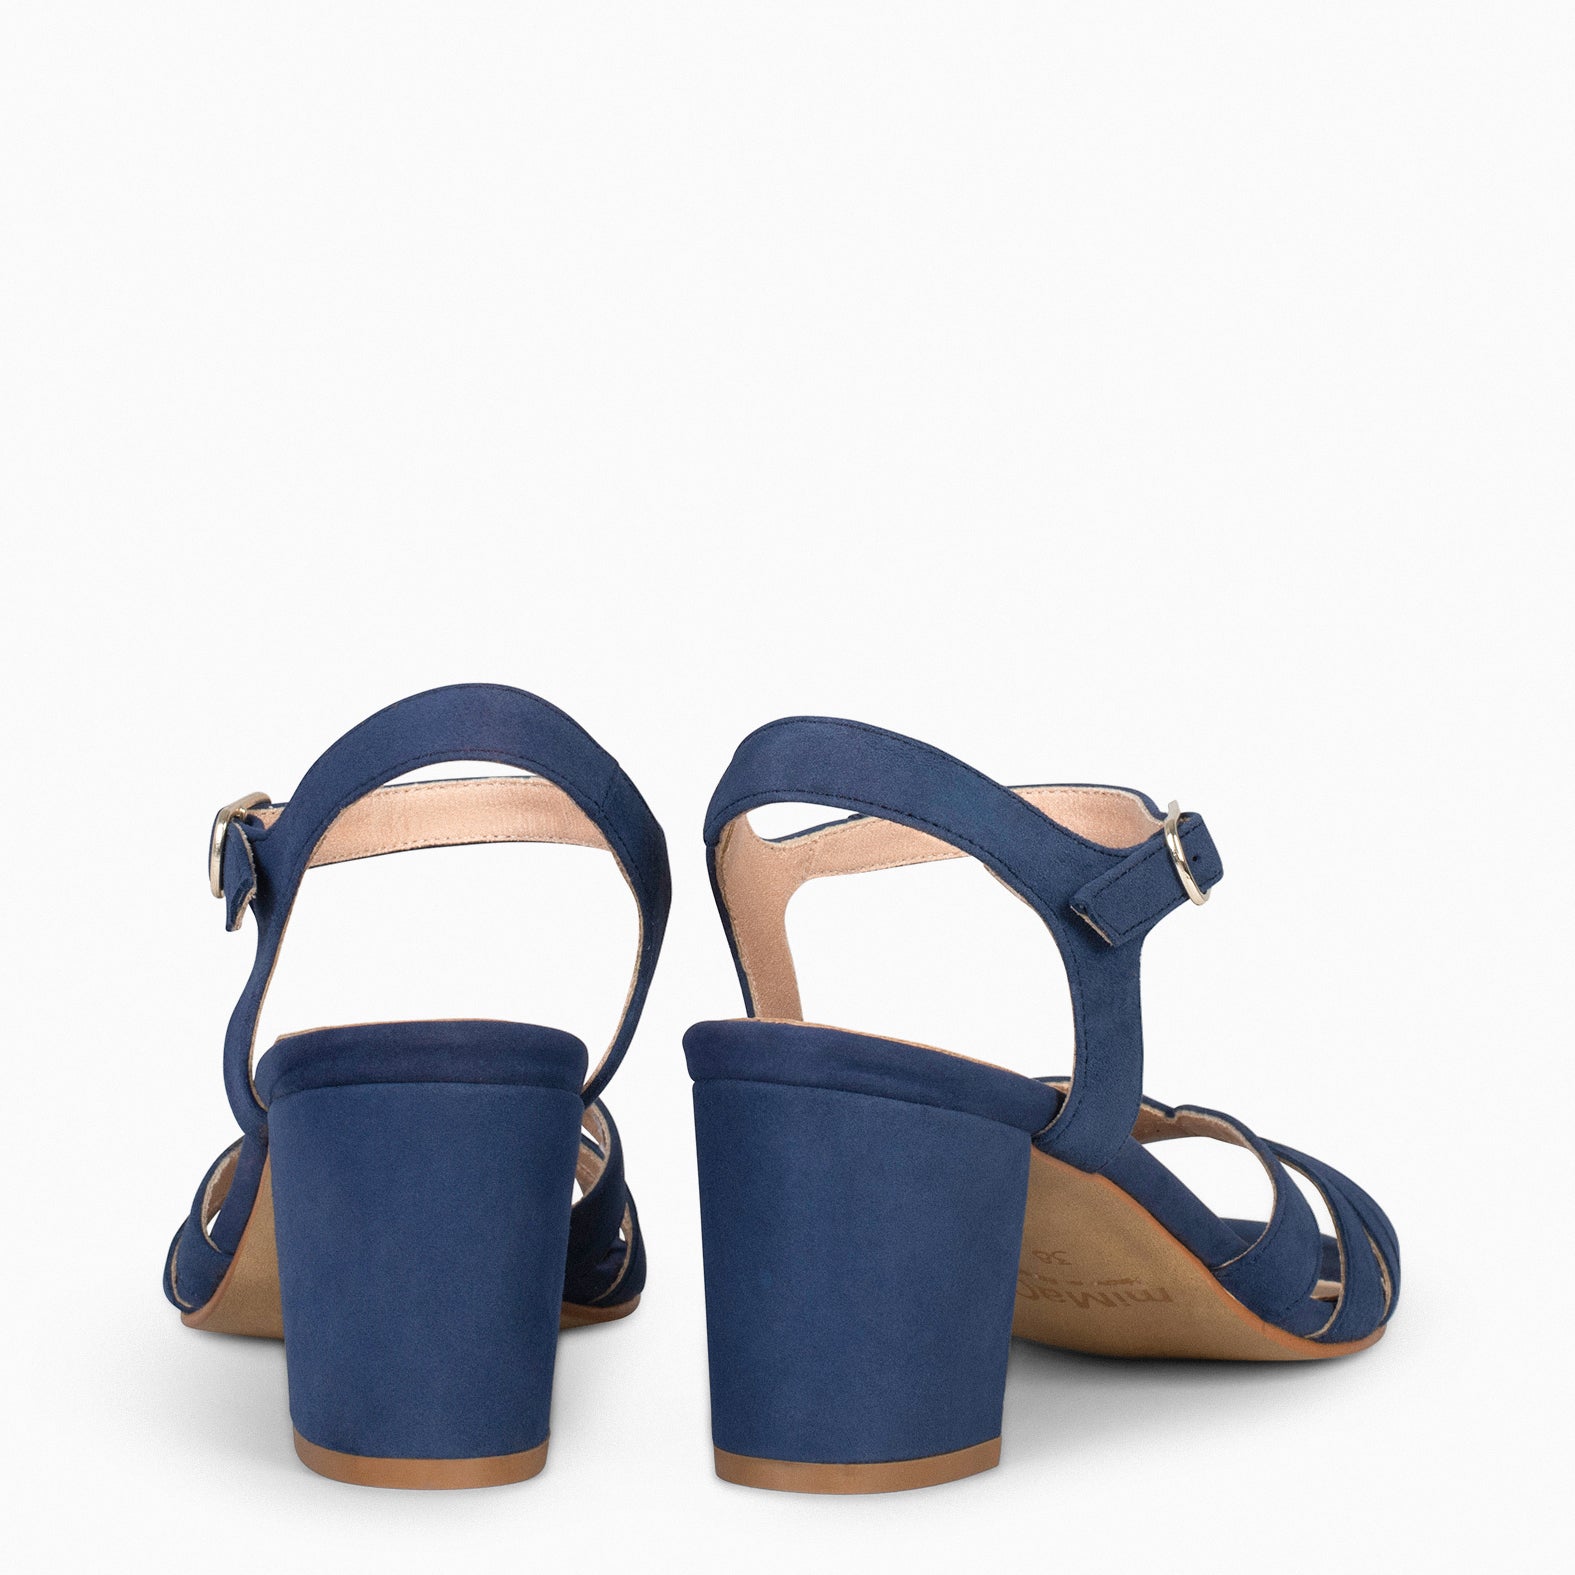 MUSE – NAVY block heel sandals